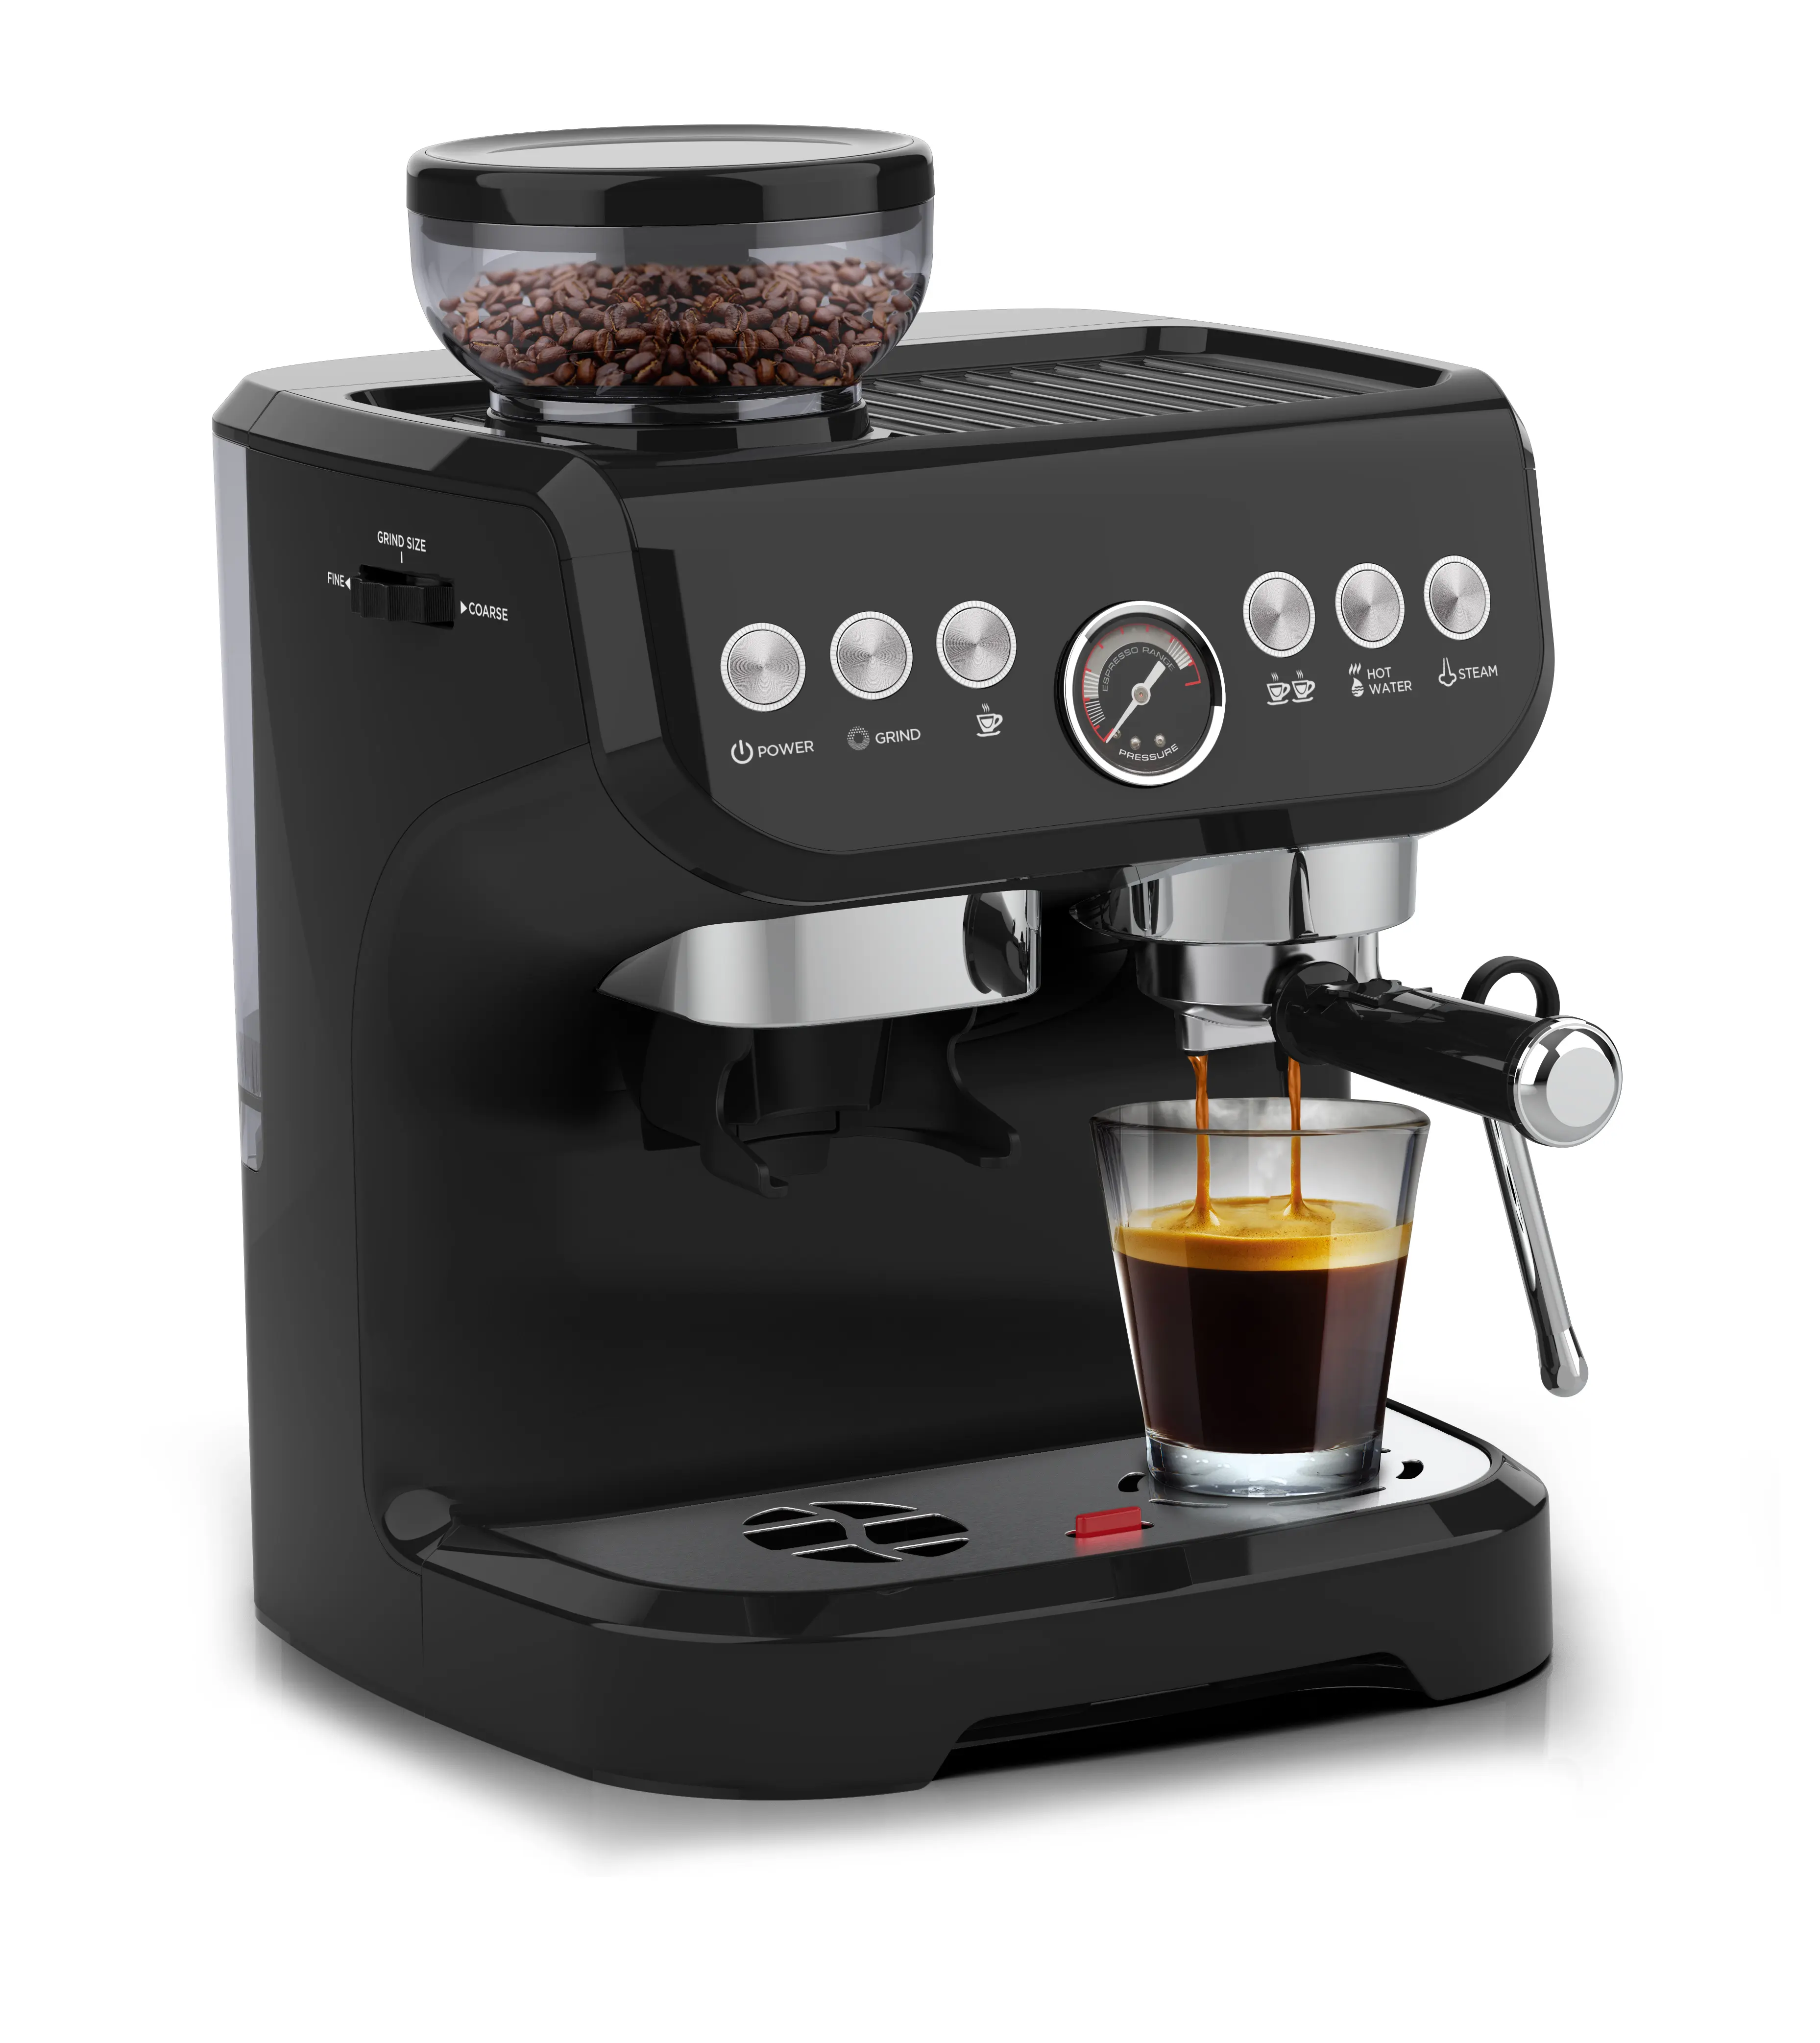 الكهربائية آلة صنع القهوة الأجهزة التلقائي الفول إلى كوب ماكينة القهوة 3 في 1 إسبرسو ماكينة القهوة مع طاحونة